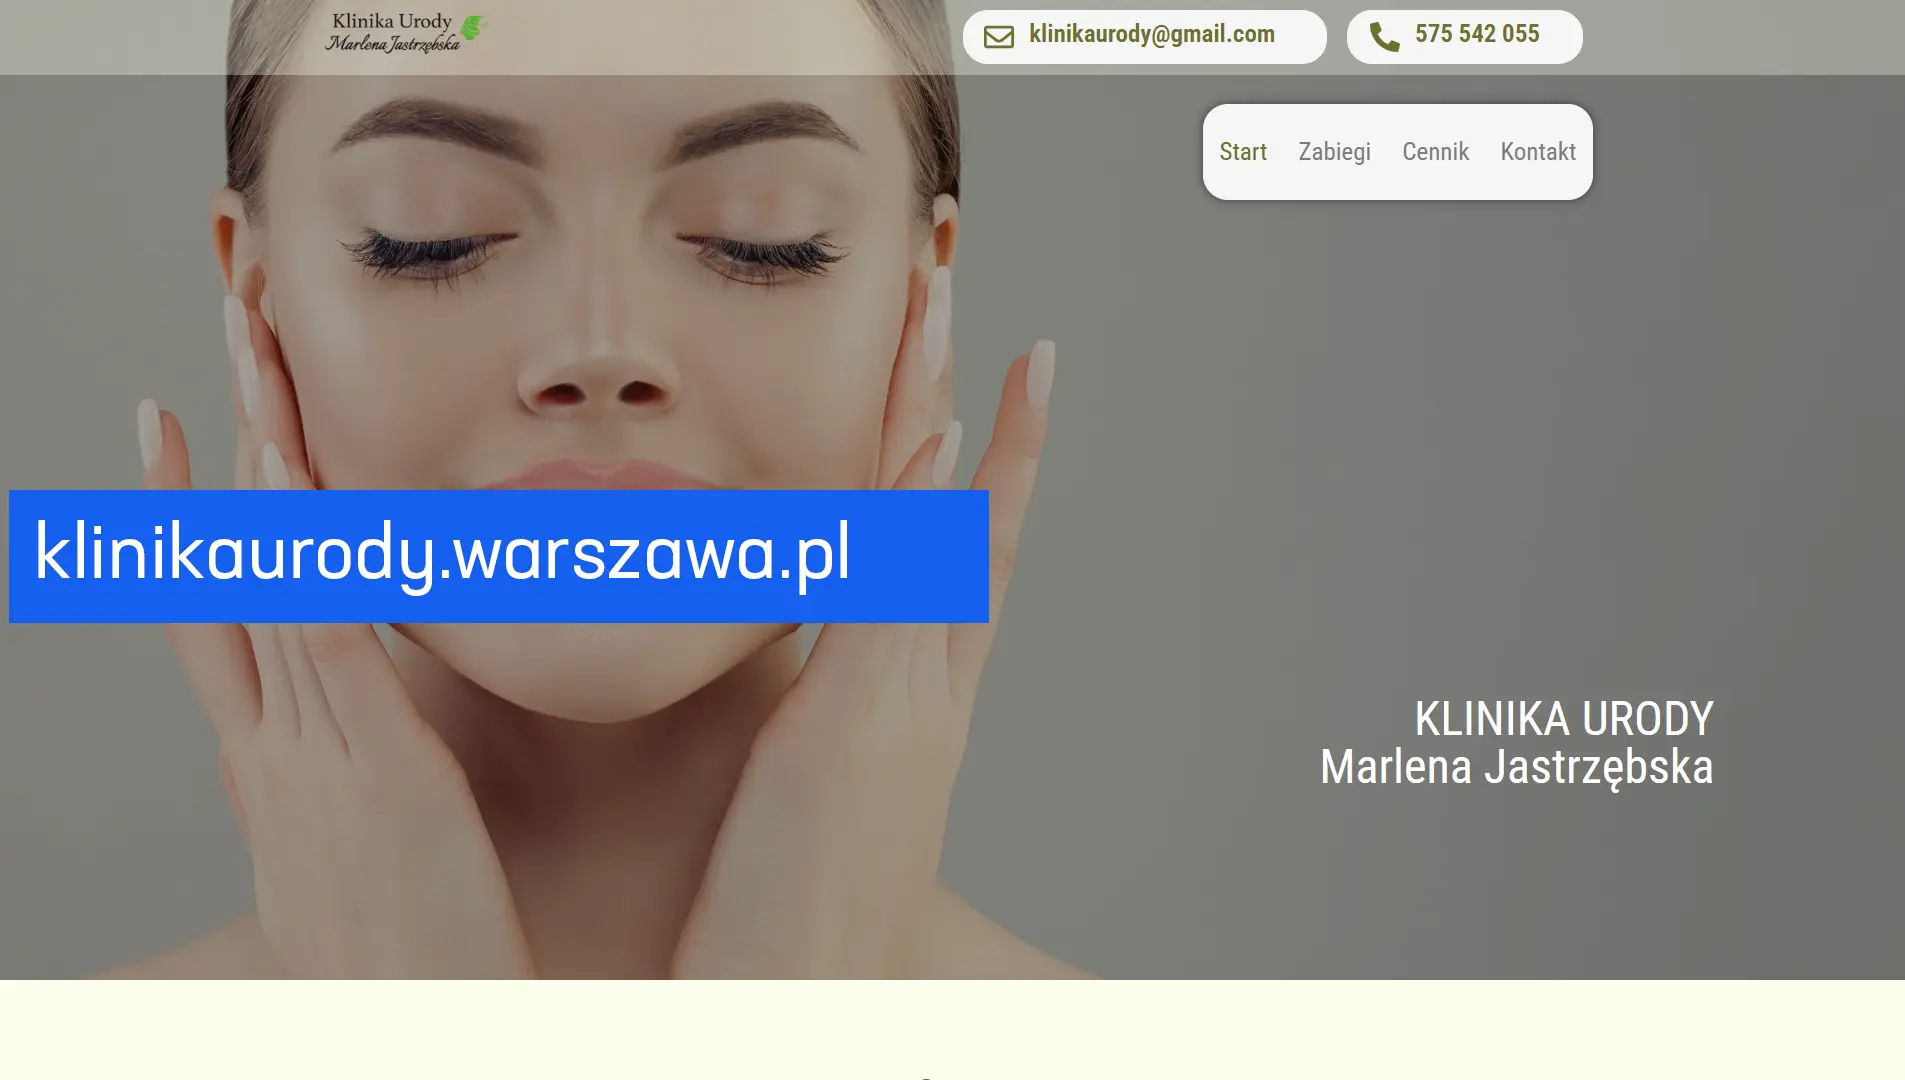 www.klinikaurody.warszawa.pl